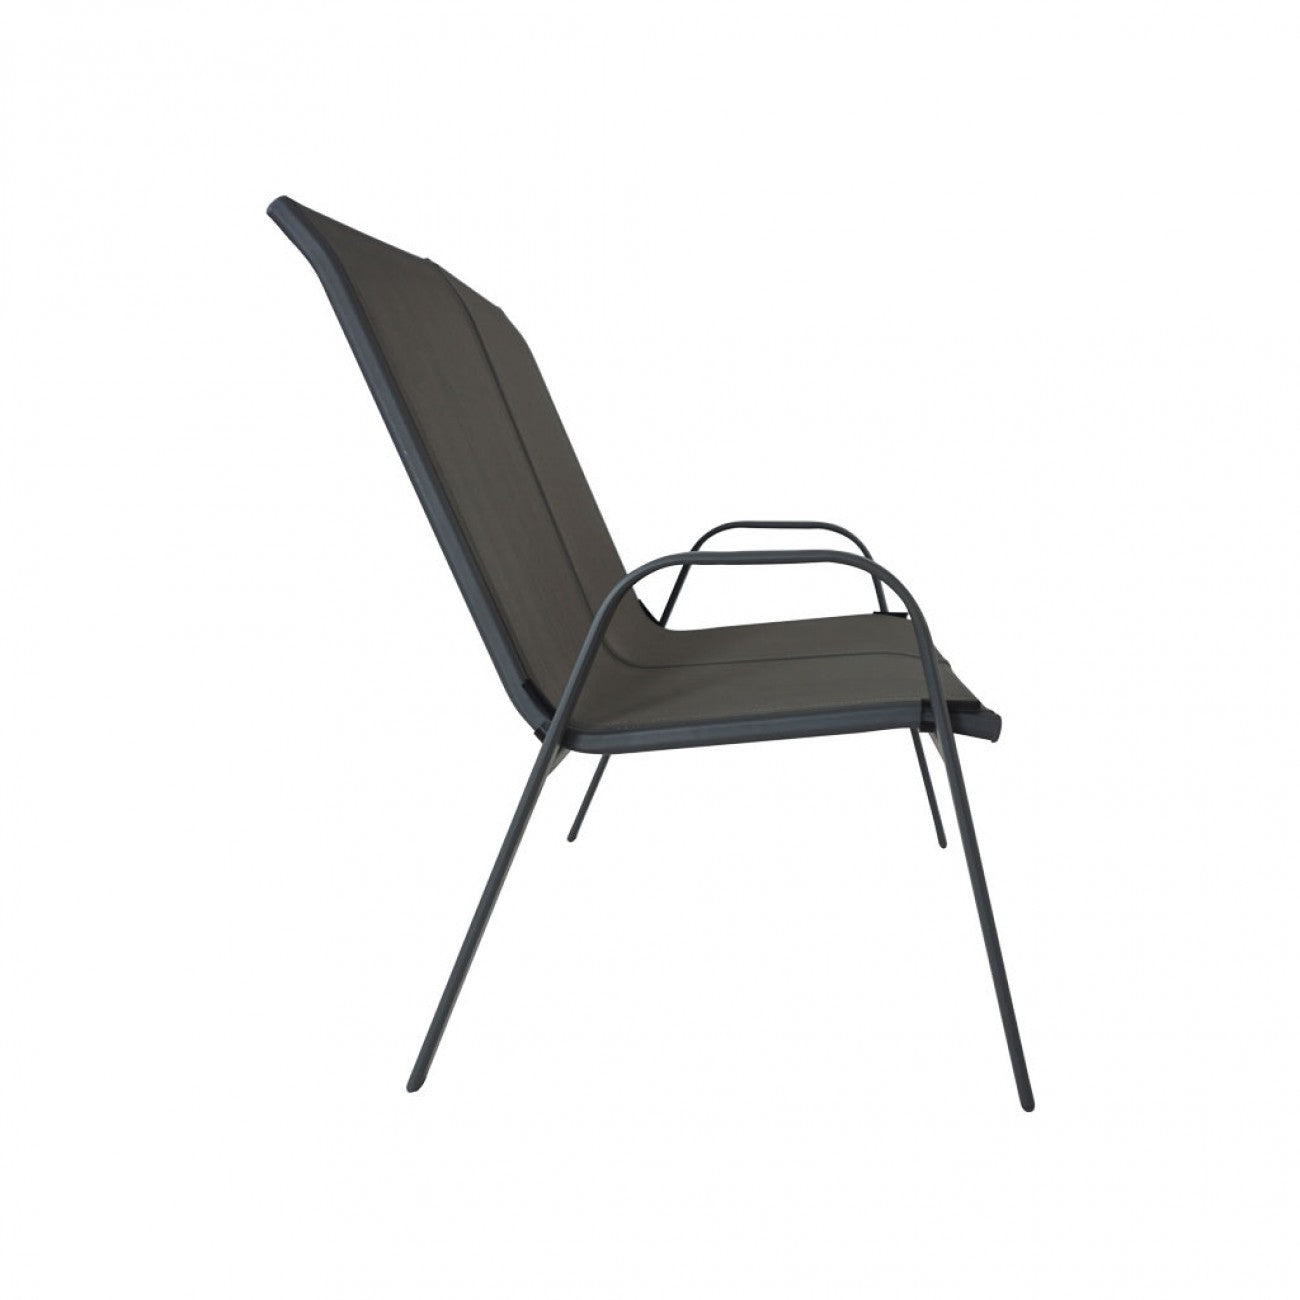 Santiago Double Chair Set - Grey (2 pcs.)